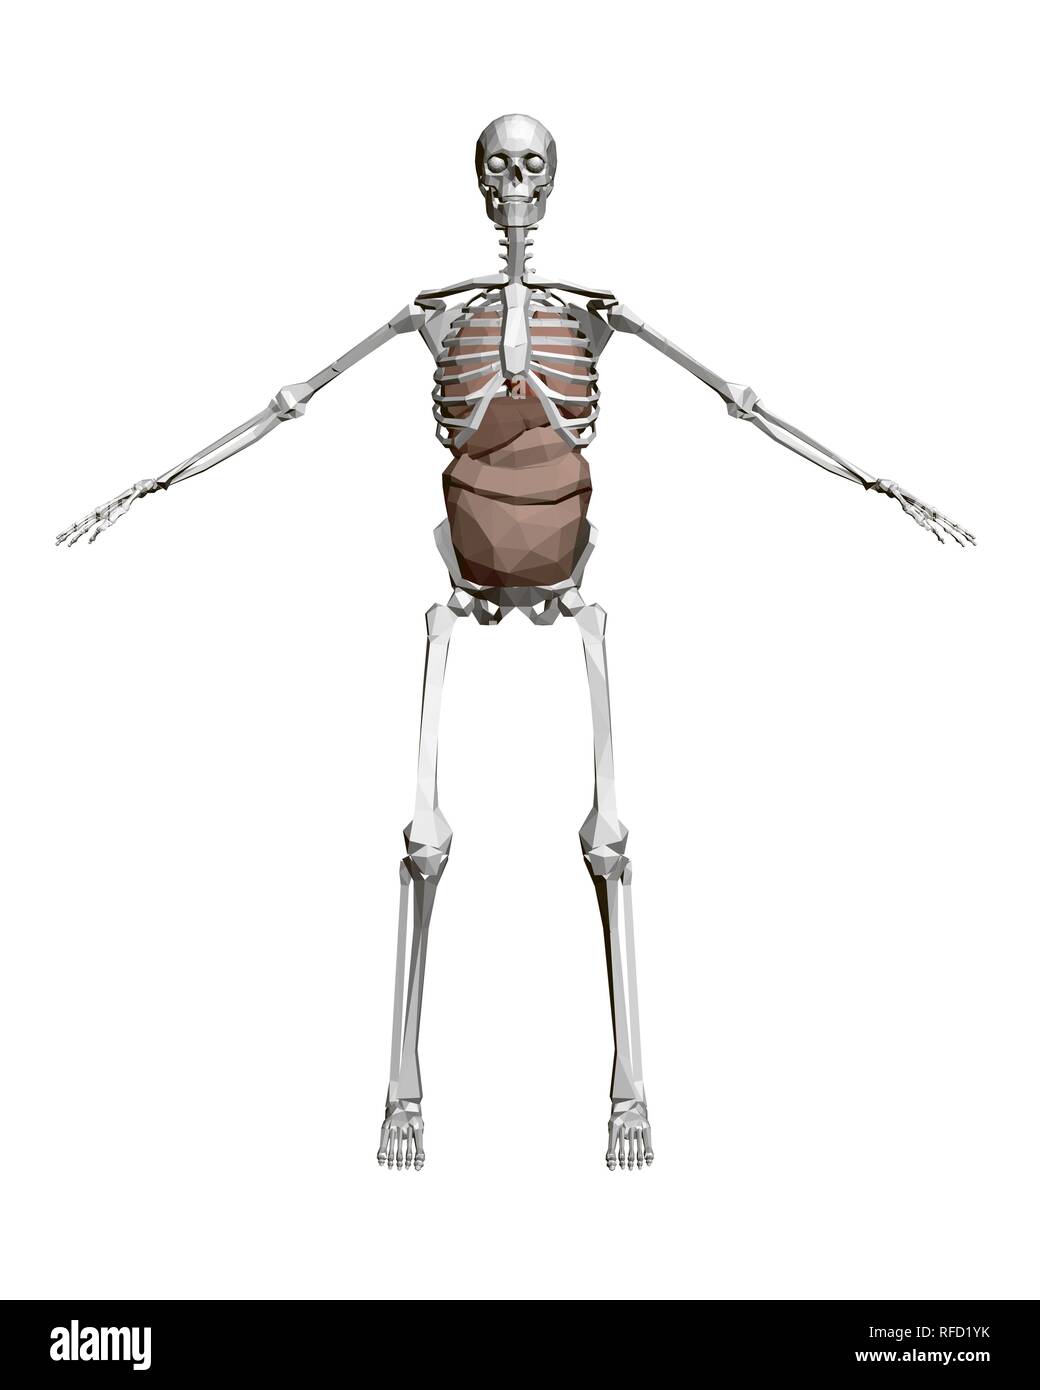 Menschliches Skelett mit Organen. 3D-Polygonalen menschliches Skelett mit der inneren Organe: Herz, Leber, Lungen, Nieren. Vorderansicht. Vector Illustration. Stock Vektor